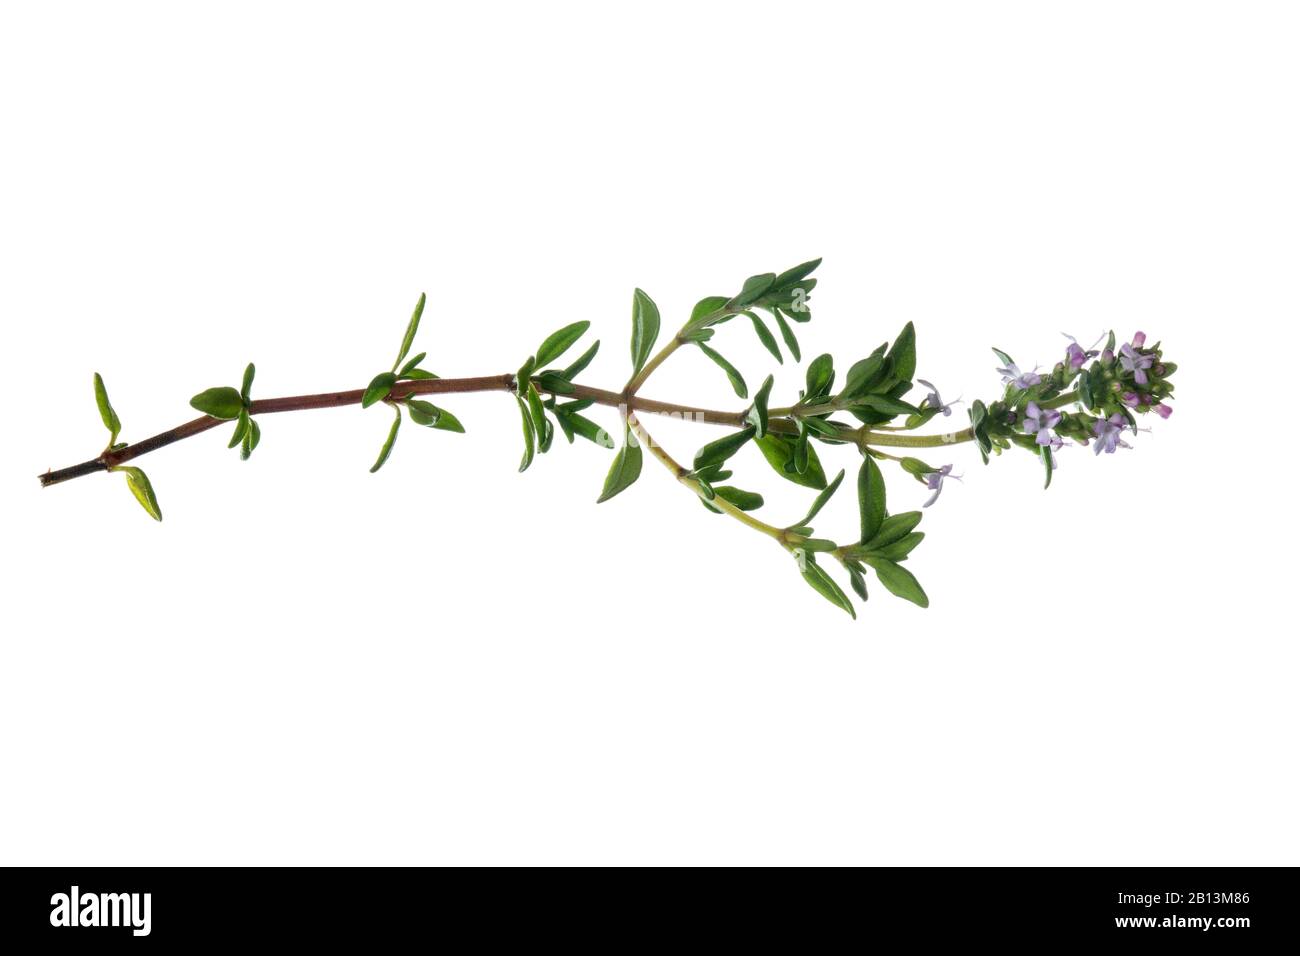 Timo da giardino, timo inglese, timo comune (Thymus vulgaris), ramoscello in fiore, ritaglio con righello Foto Stock